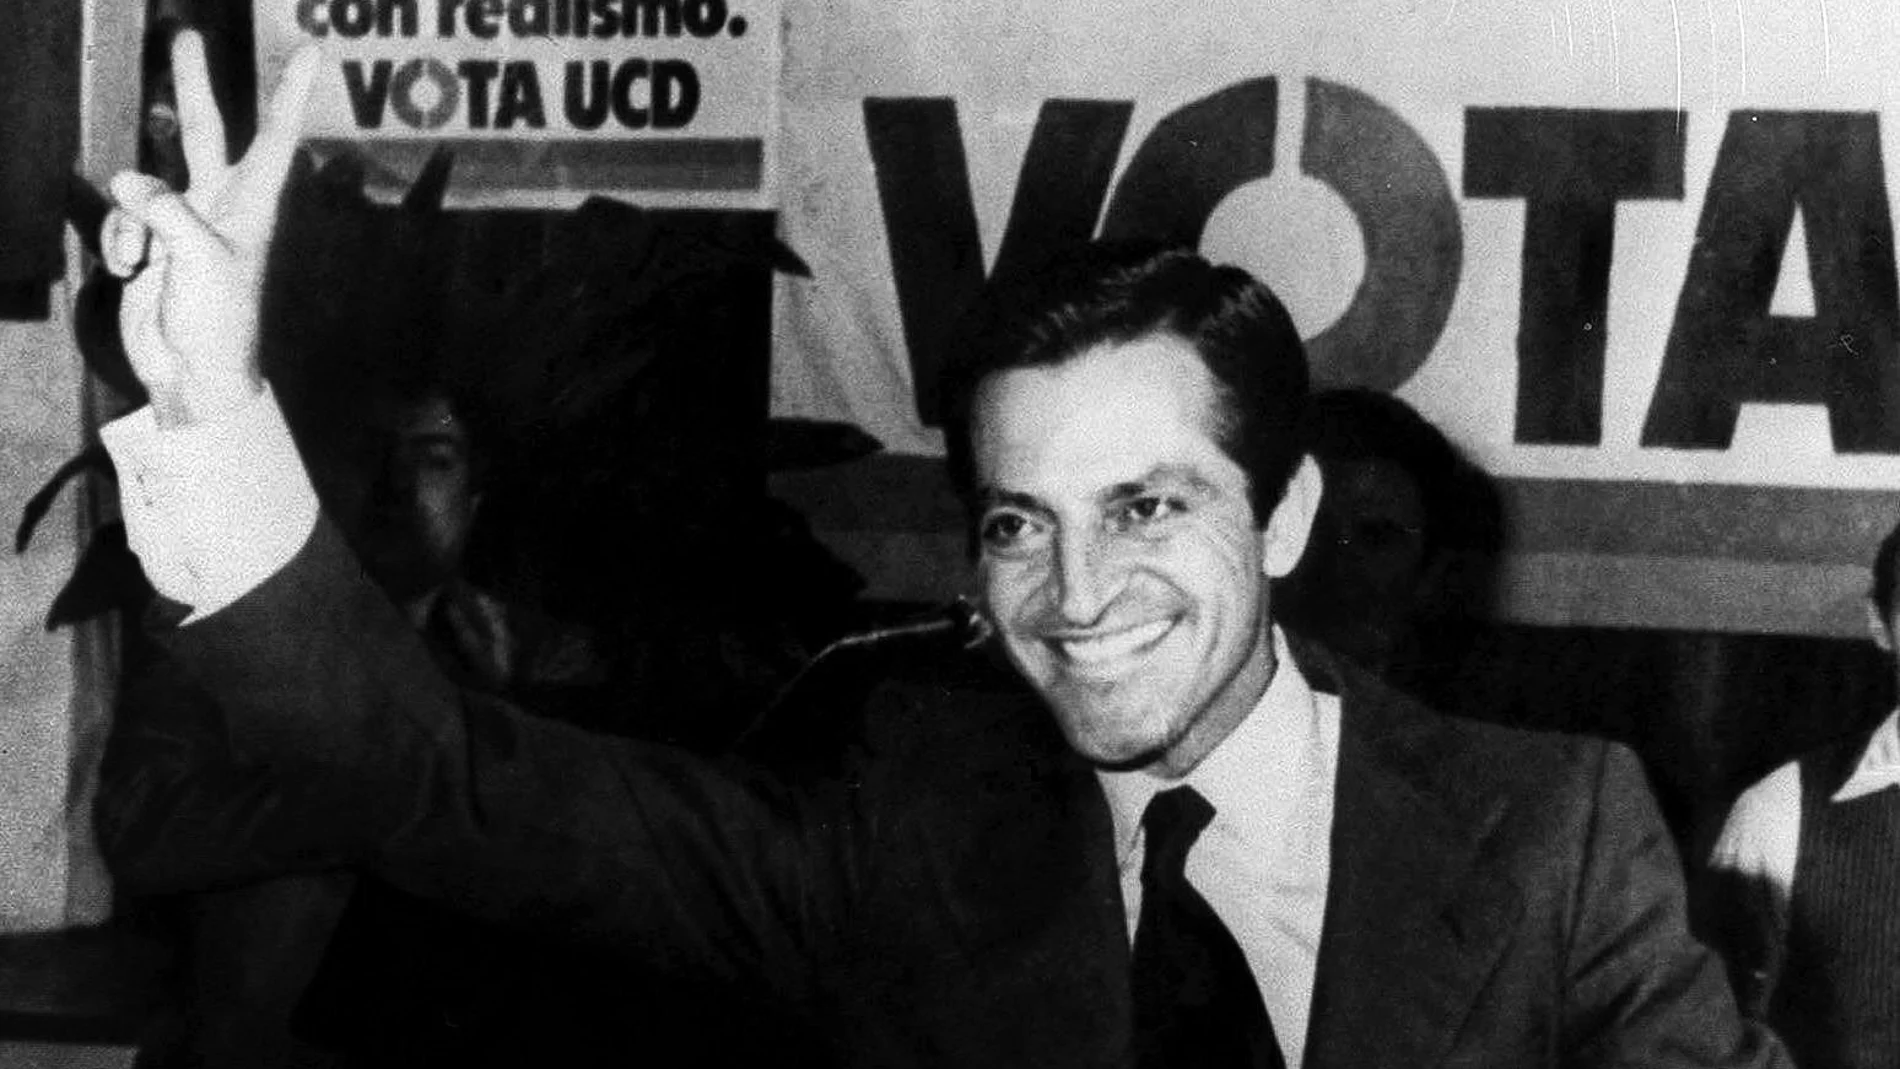 Fotografía de archivo (Palma de Mallorca, 23/02/1979) del entonces presidente del Gobierno y de la UCD, Adolfo Suárez, que saluda a los asistentes a una cena organizada por su partido en Palma.